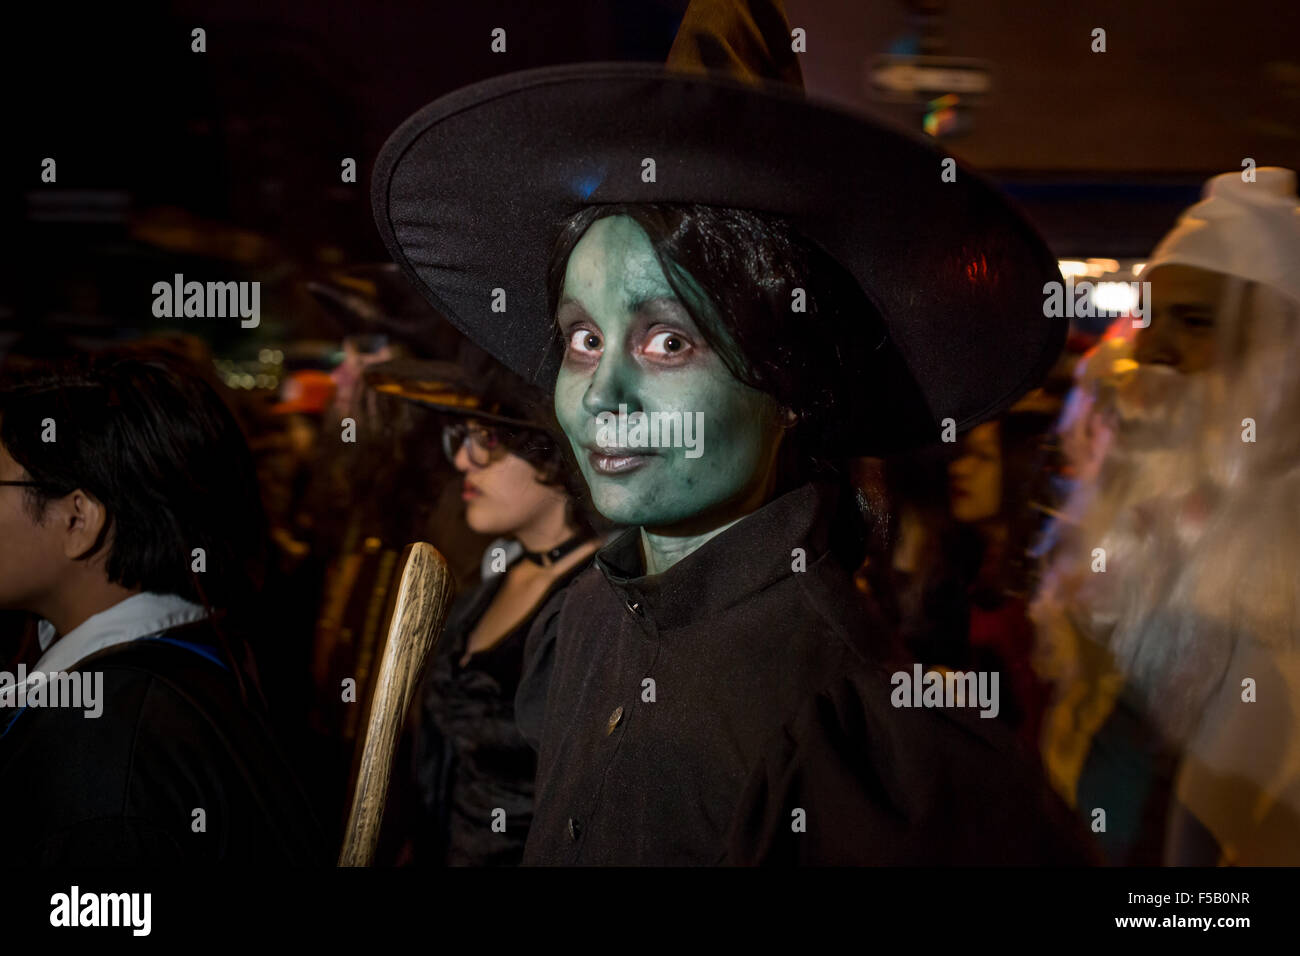 New York, NY - 31. Oktober 2015. Eine Frau mit grünen Gesicht Make-up und ein Hexenhut auszusehen wie Elphaba, die böse Hexe in The Wiz in Greenwich Village Halloween Parade gebildet. Stockfoto